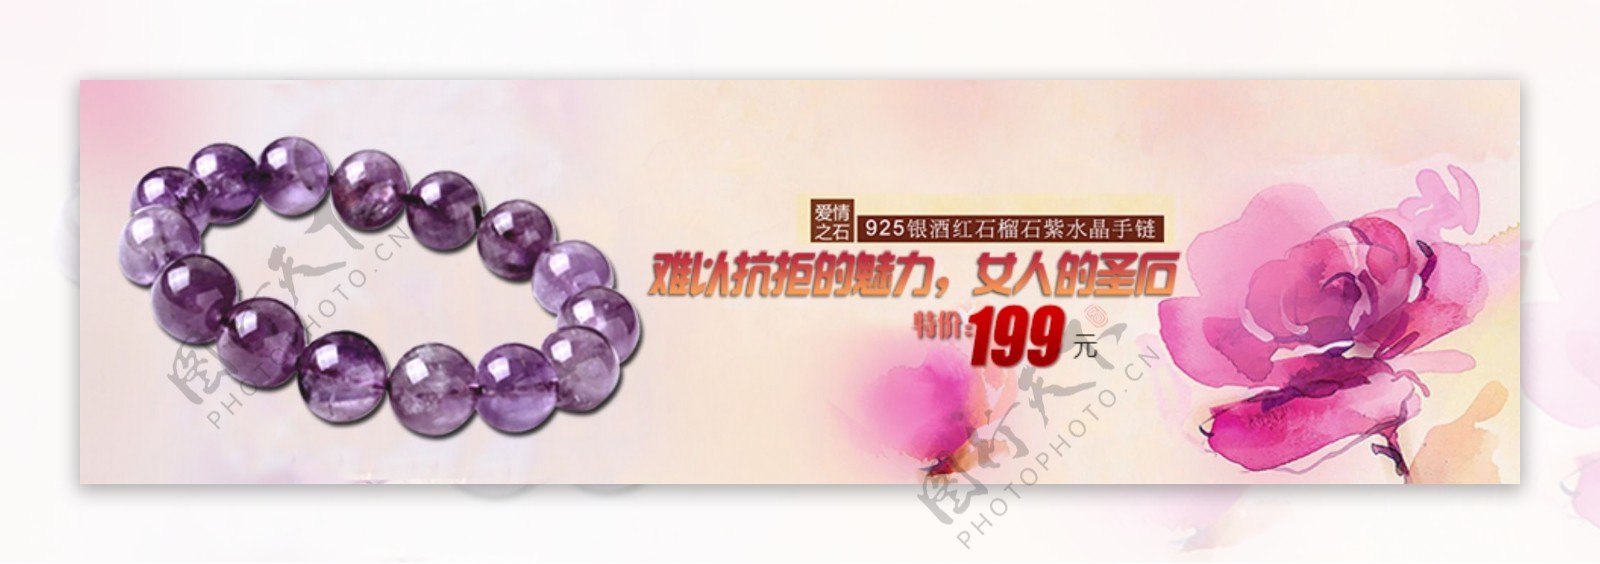 紫水晶手链banner